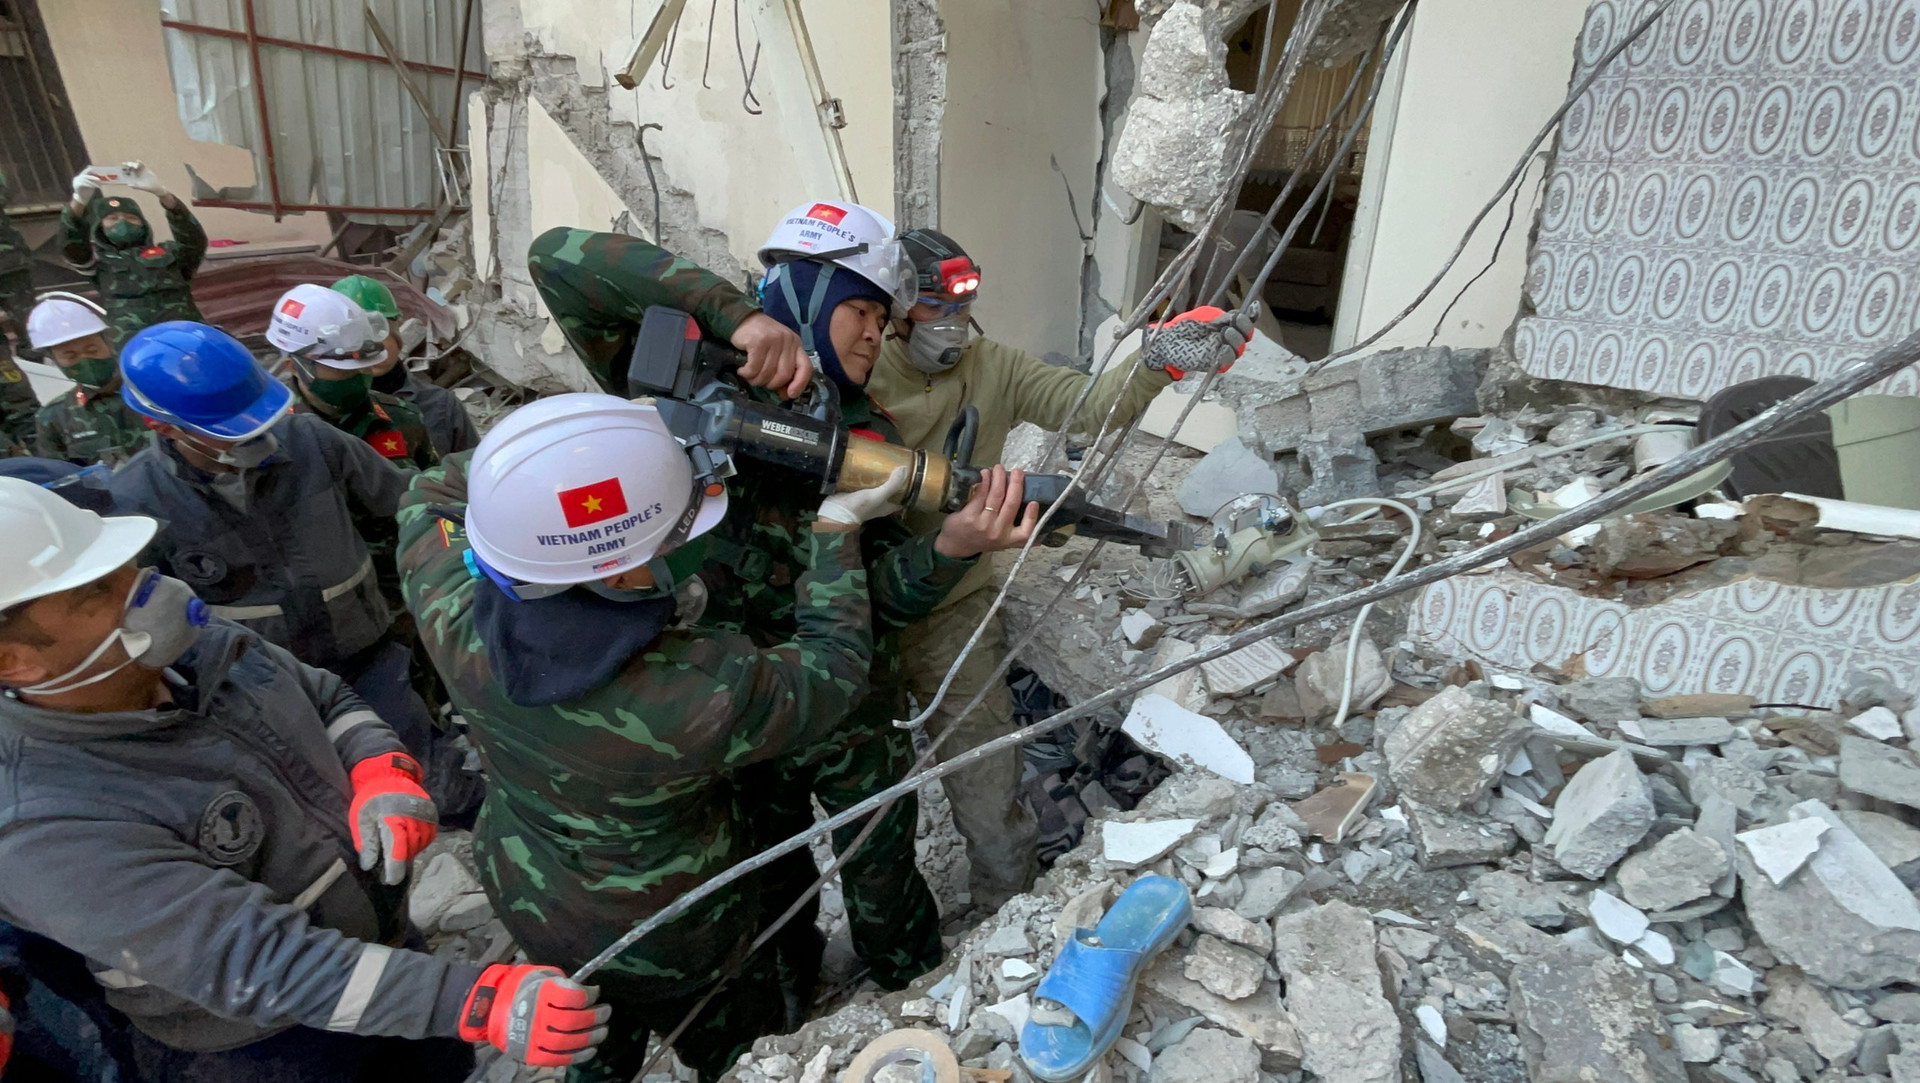 Đoàn cứu hộ QĐND Việt Nam ở Thổ Nhĩ Kỳ xác định được 12 vị trí có nạn nhân - 1